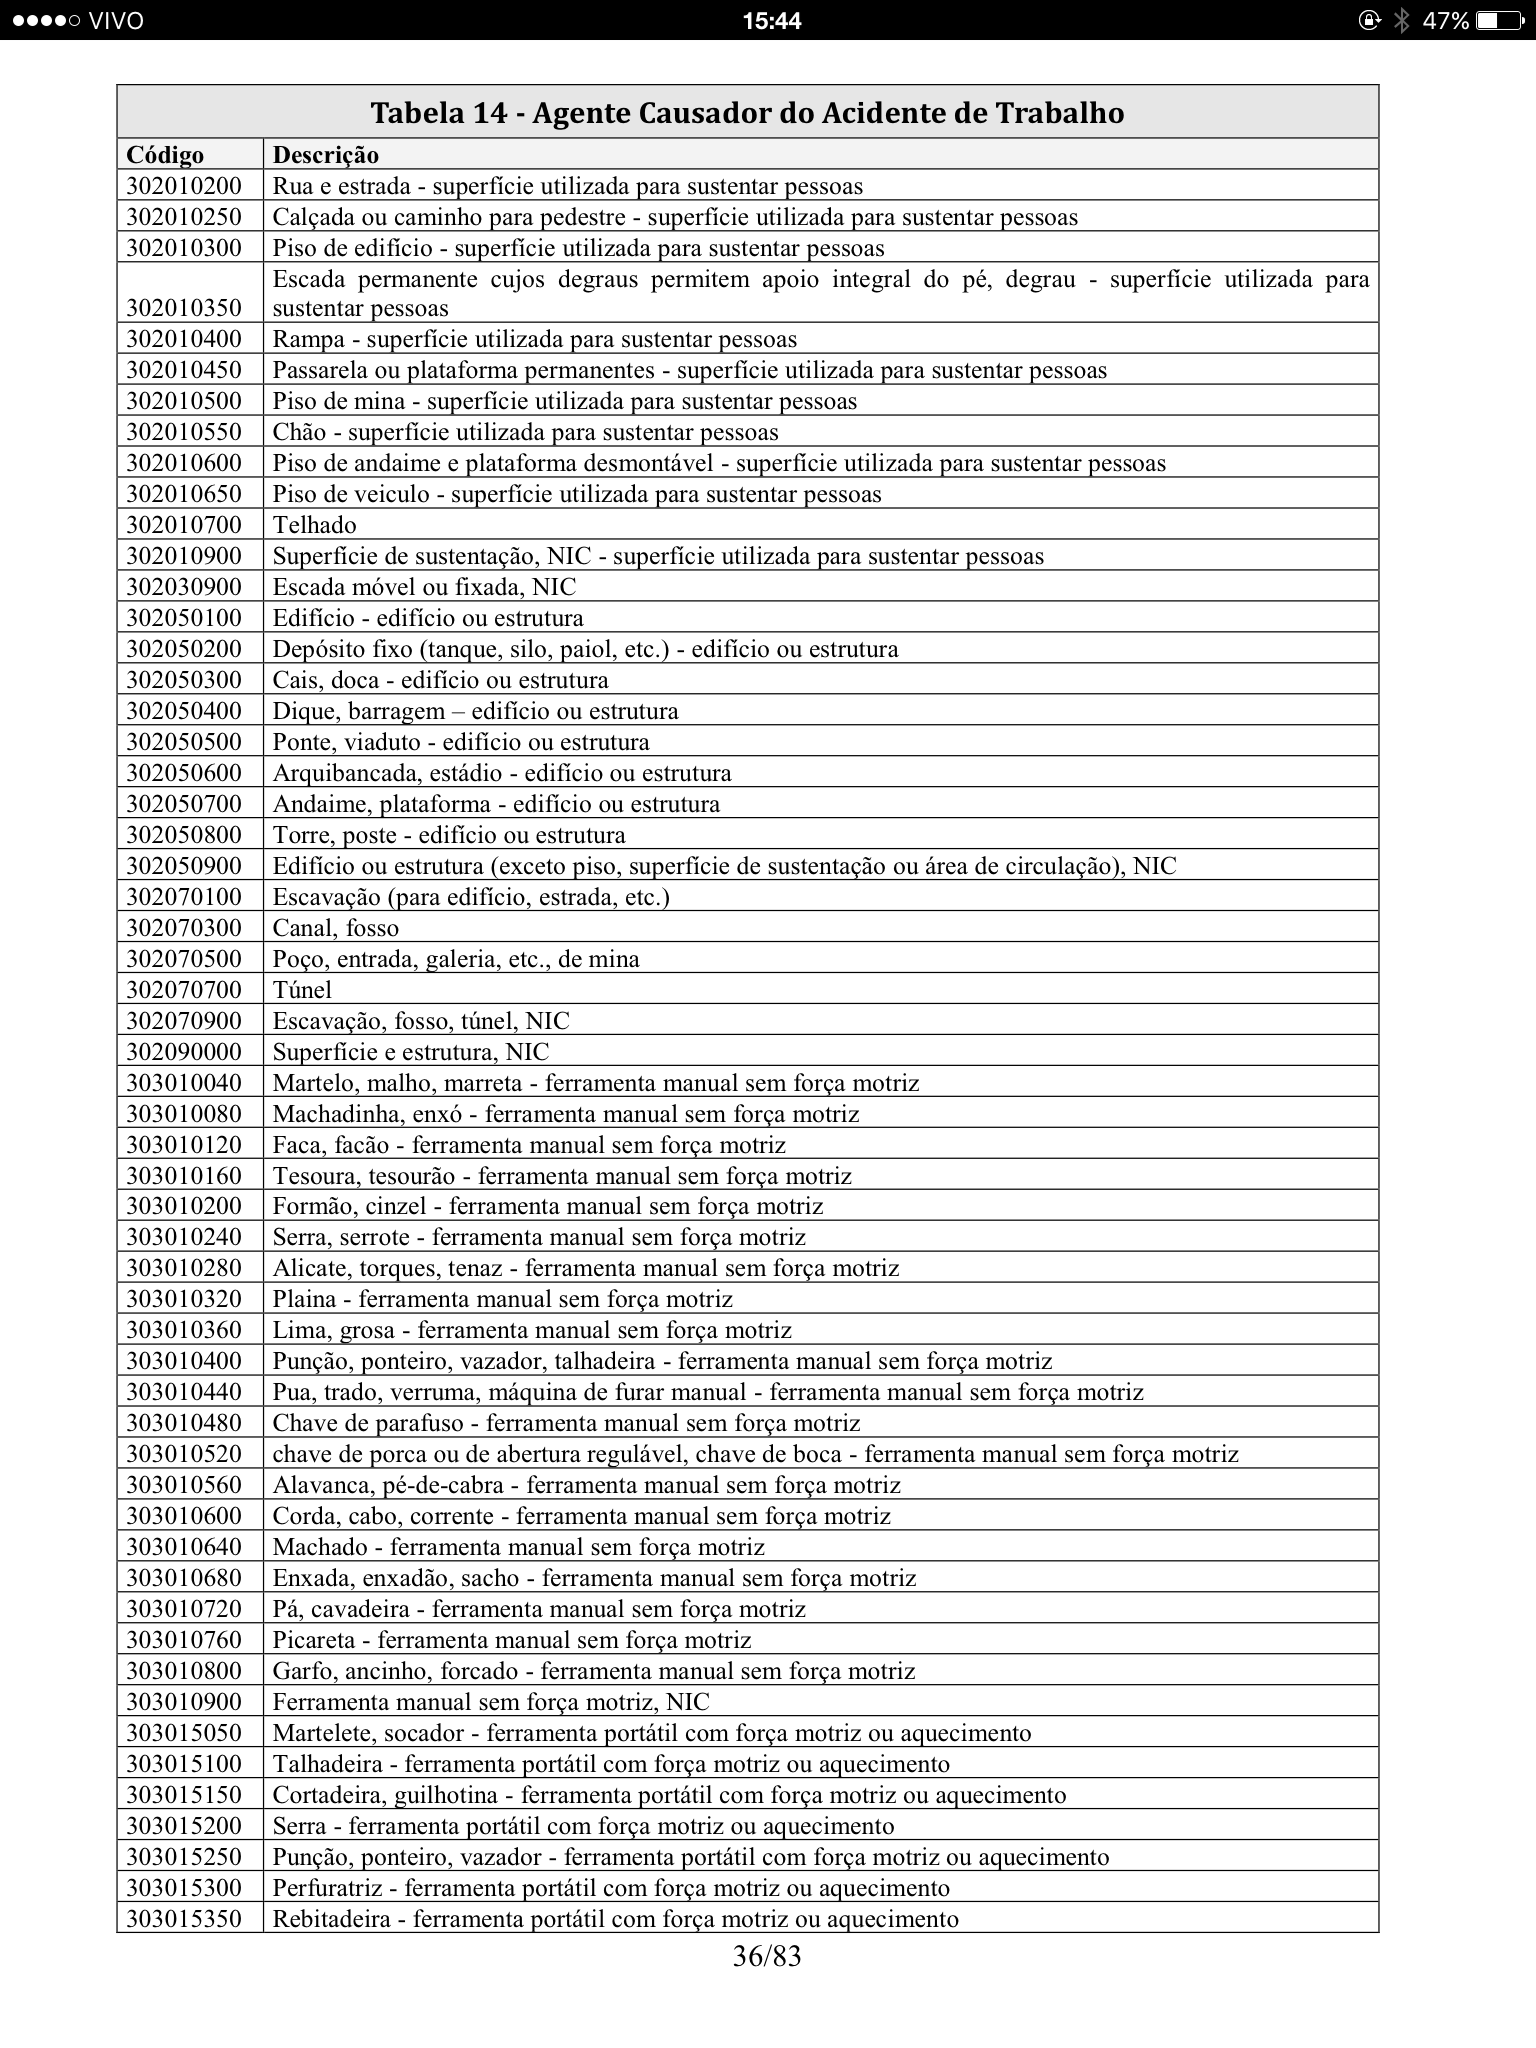 Tabela 14 Agente Causador do Acidente de Trabalho 2